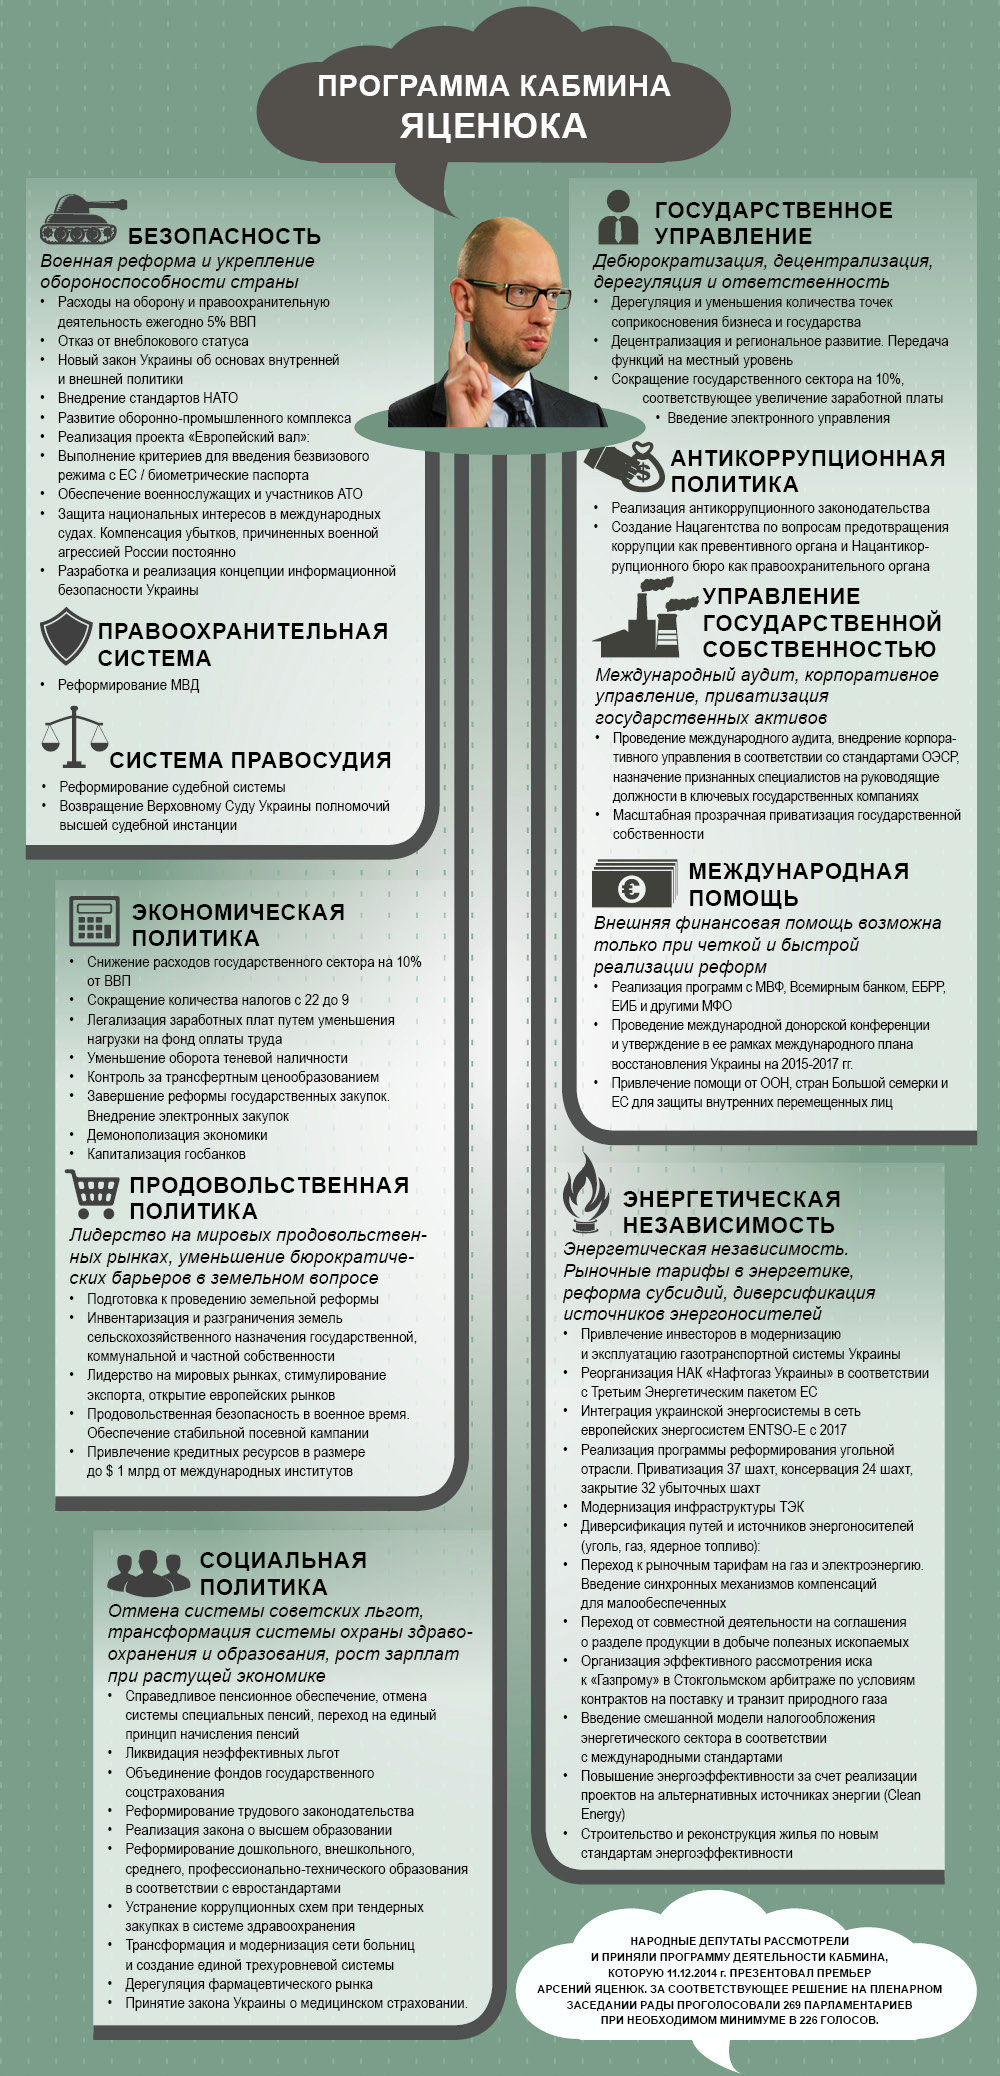 Программа Кабмина Яценюка. Инфографика